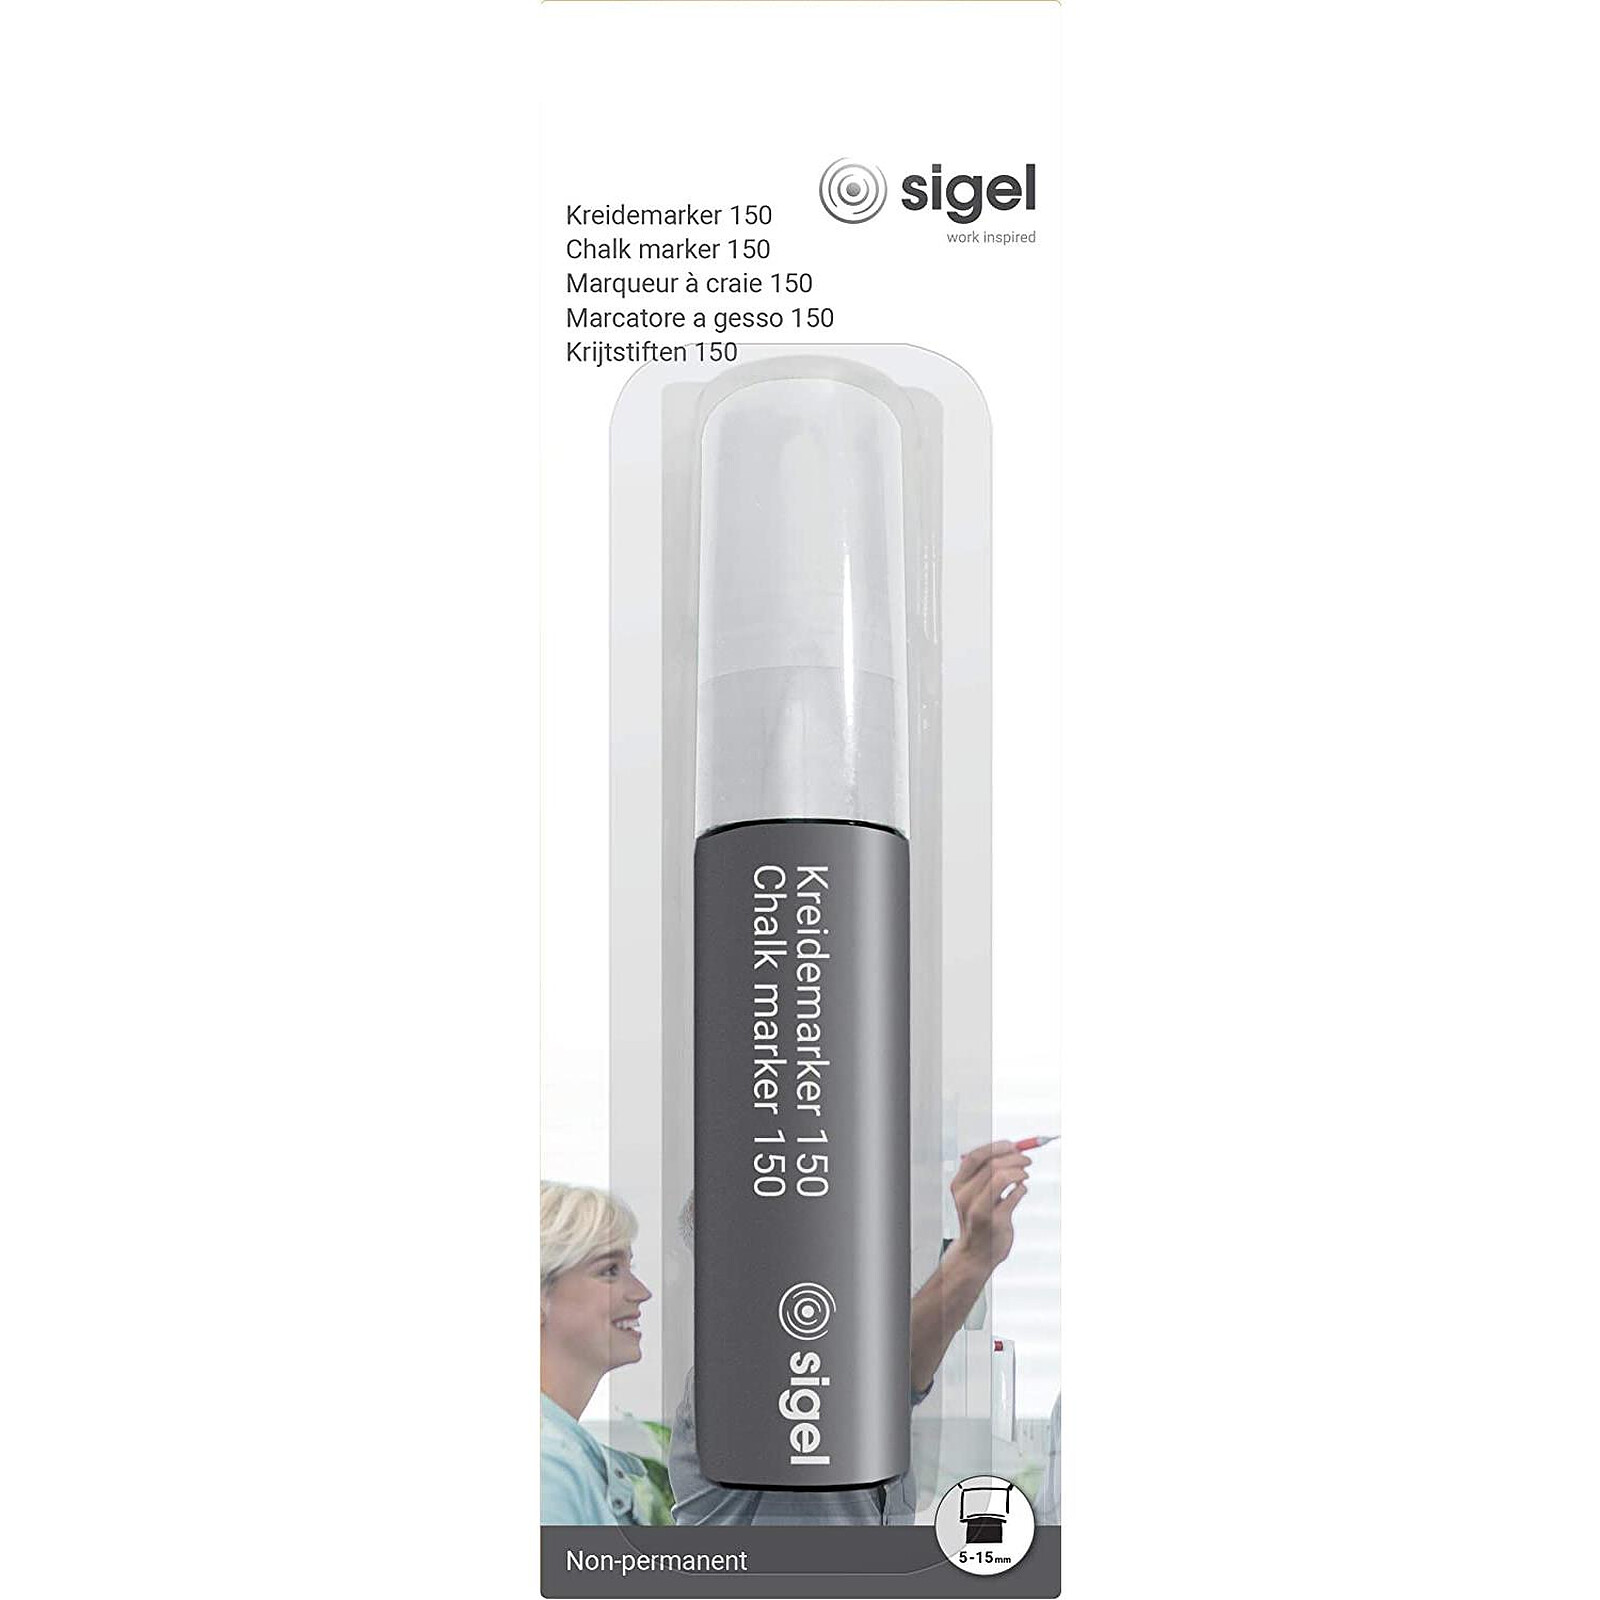 SIGEL Marqueur Craie 150 Effaçable pointe biseautée 5 - 15 mm blanc -  Accessoires tableau - LDLC